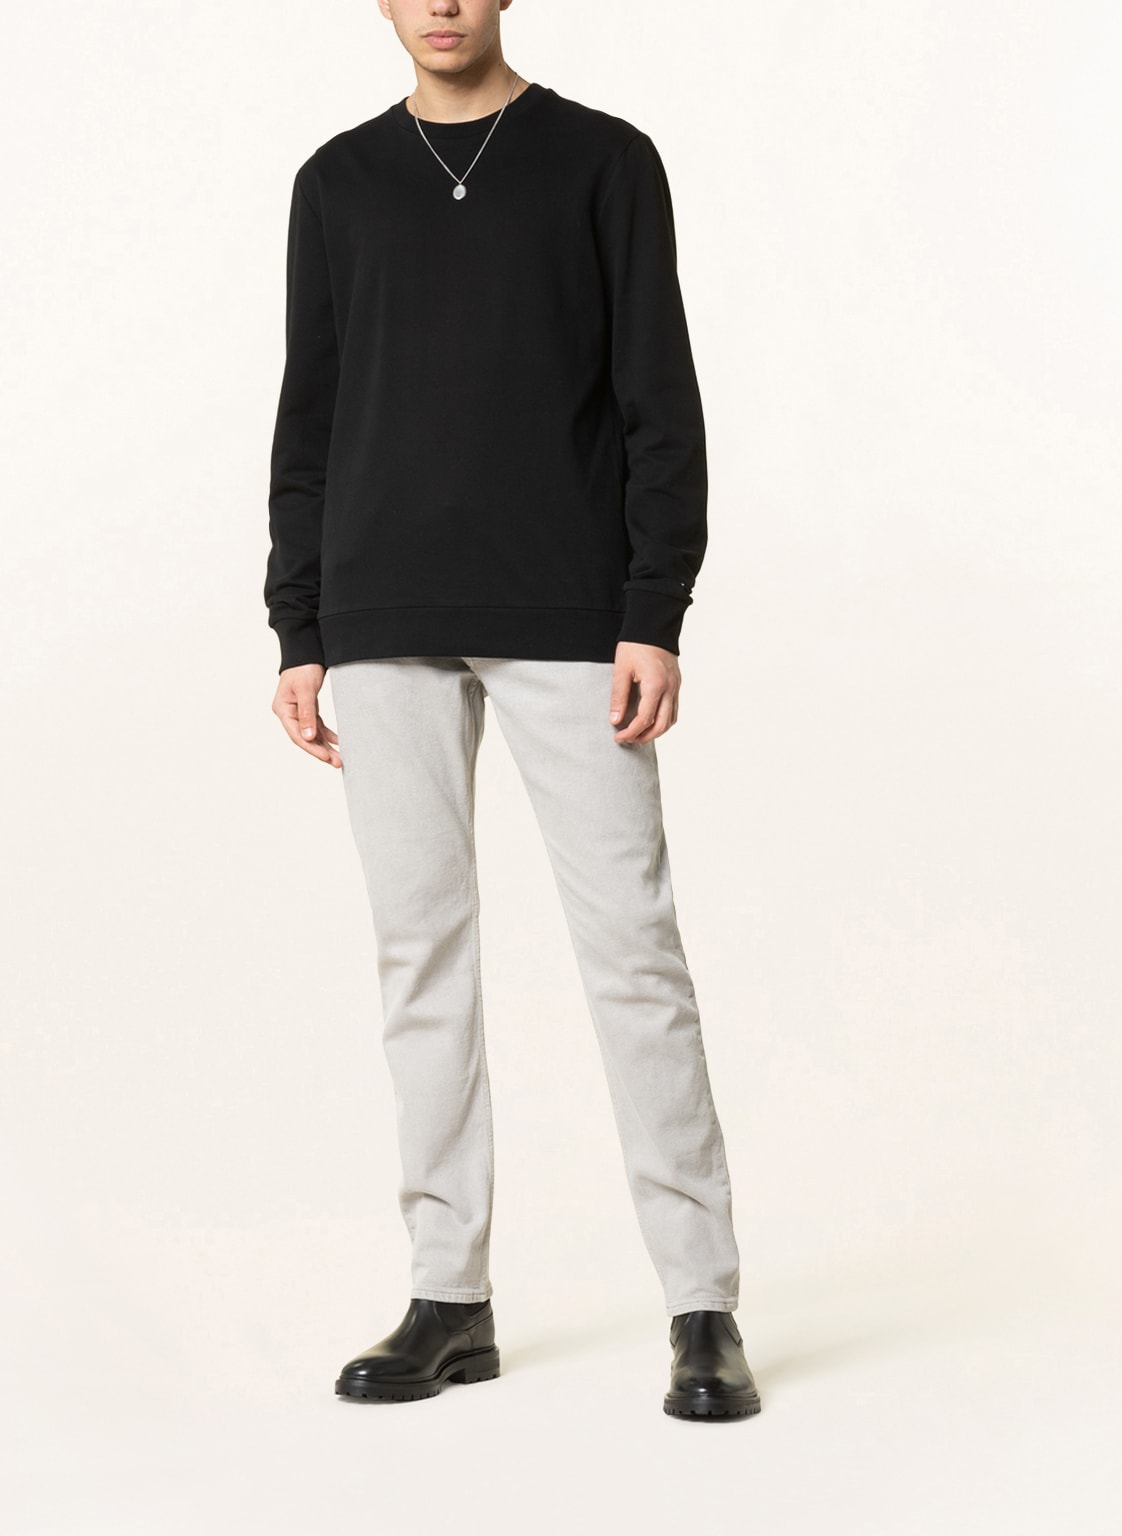 ALL SAINTS Sweatshirt HASTE in schwarz online kaufen